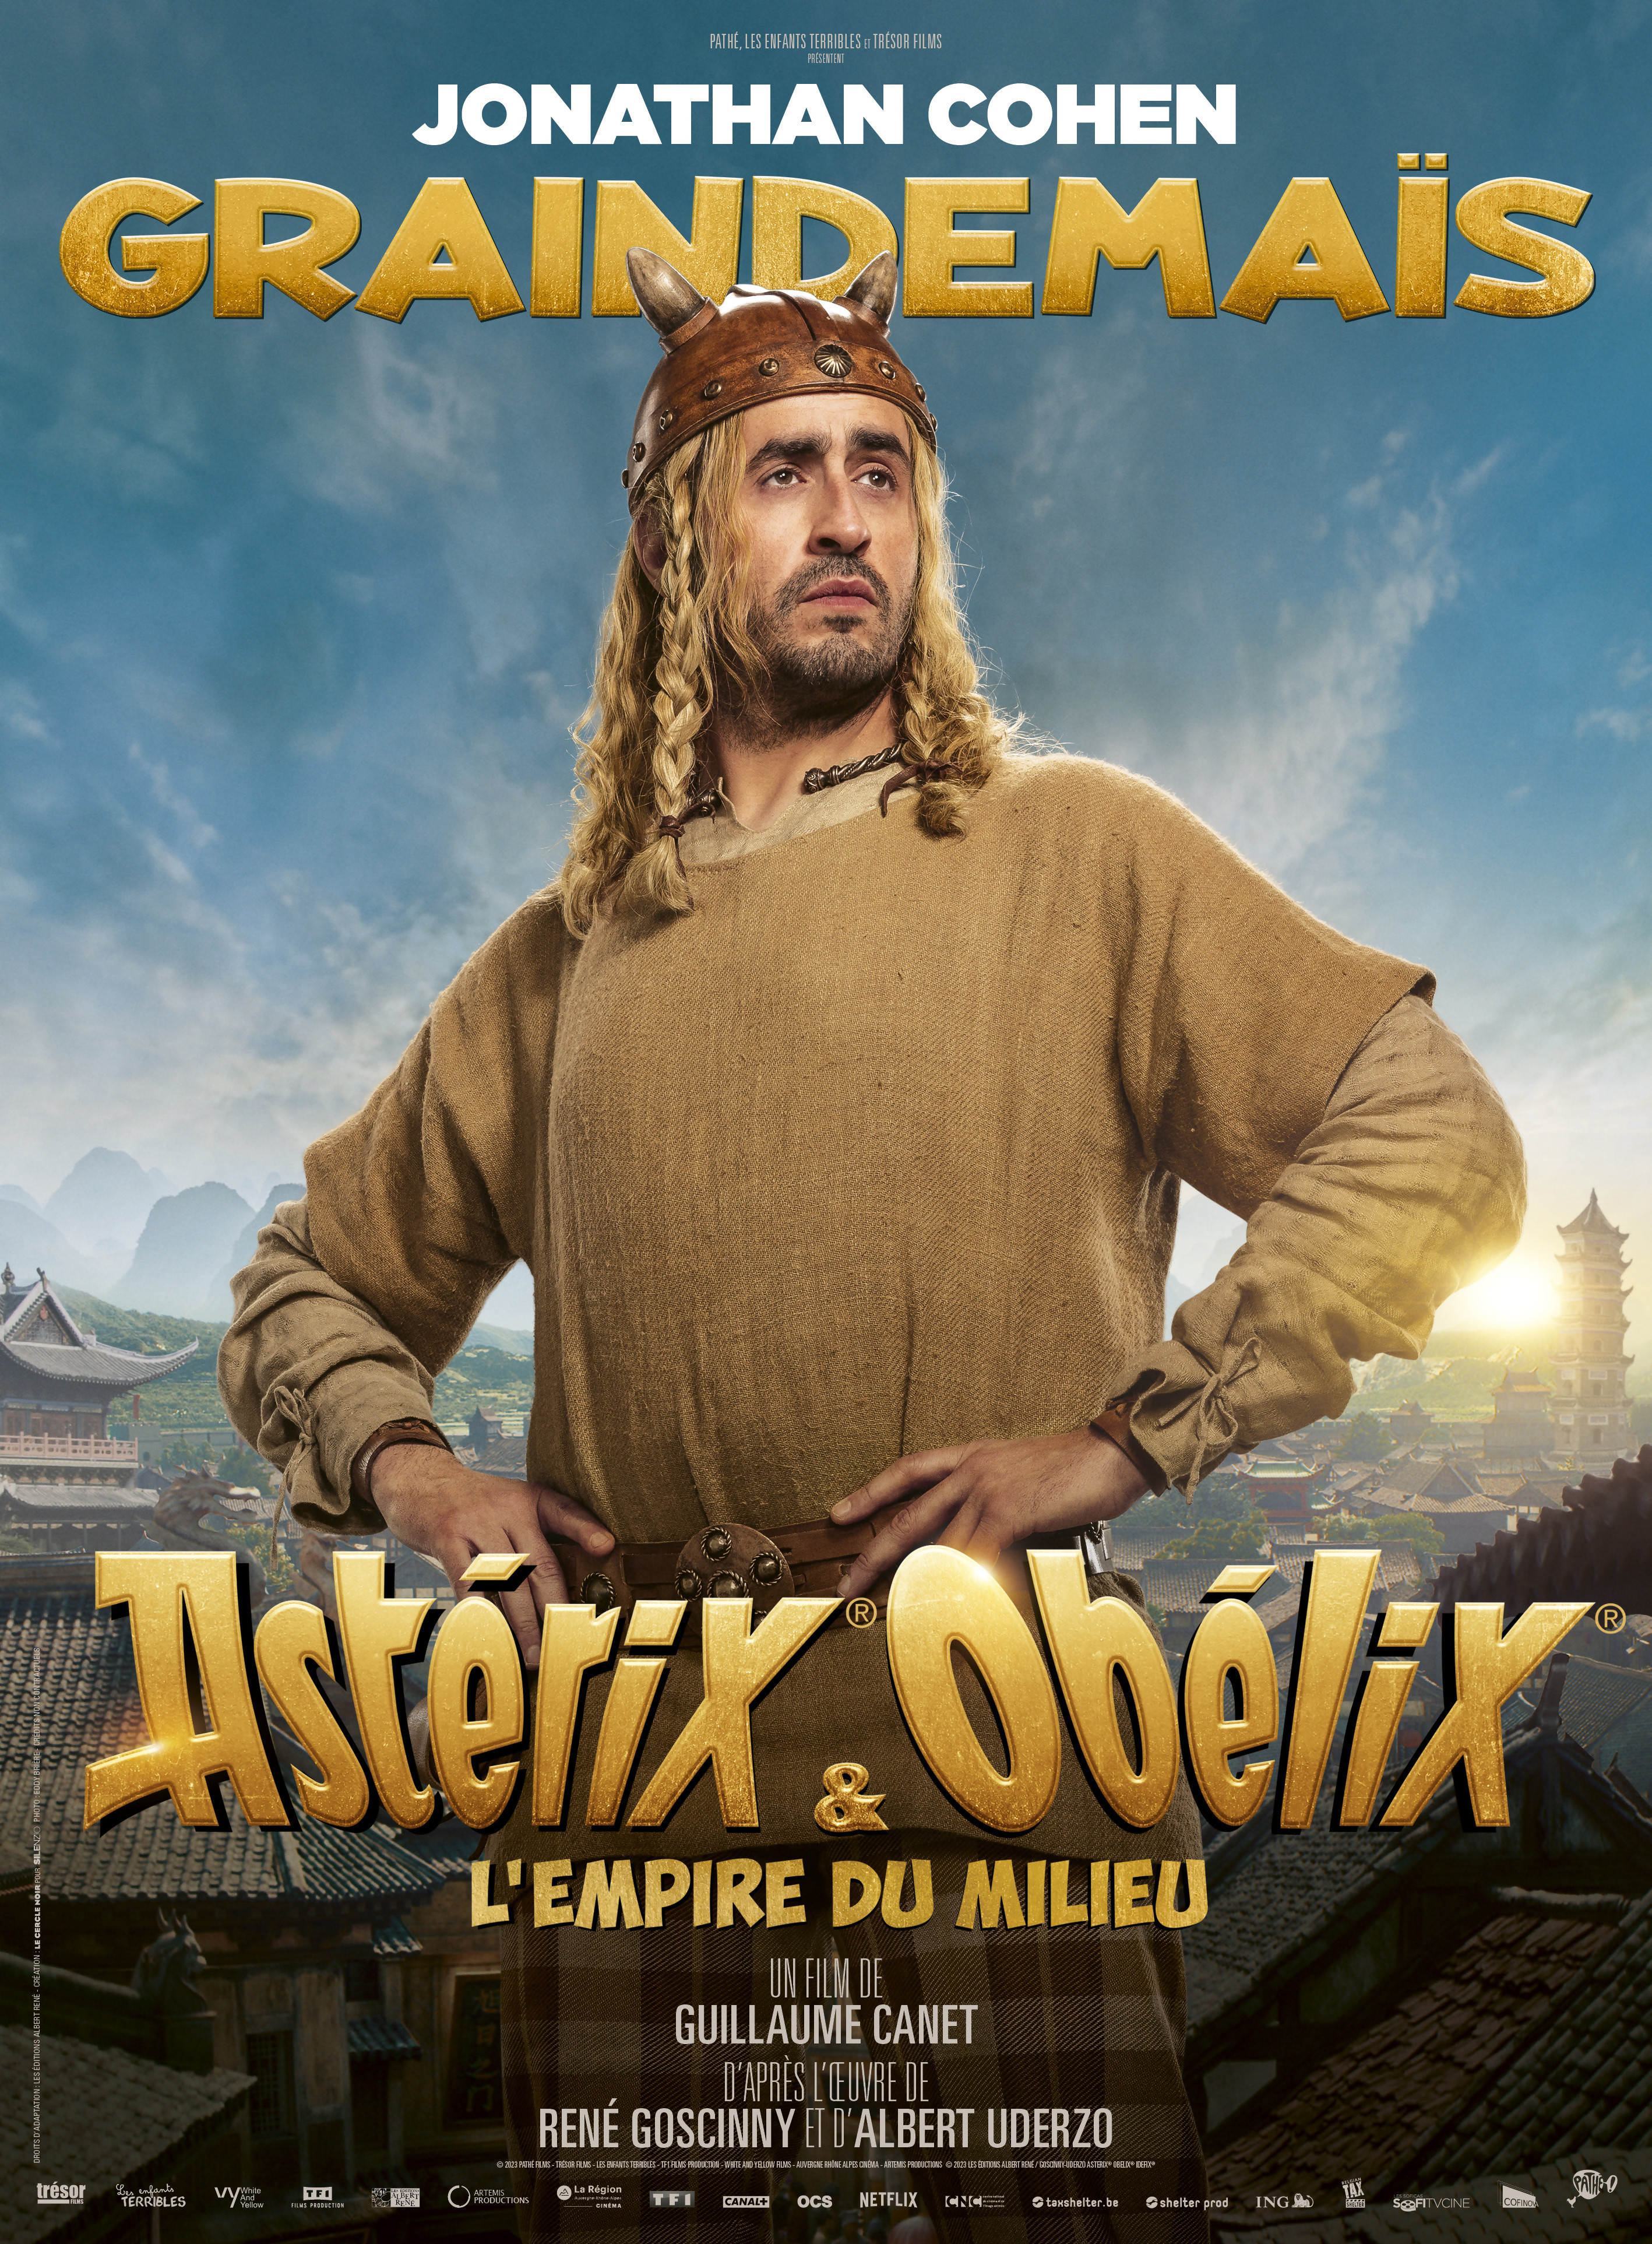 Astérix & Obélix L'Empire du Milieu : tous les personnages du film